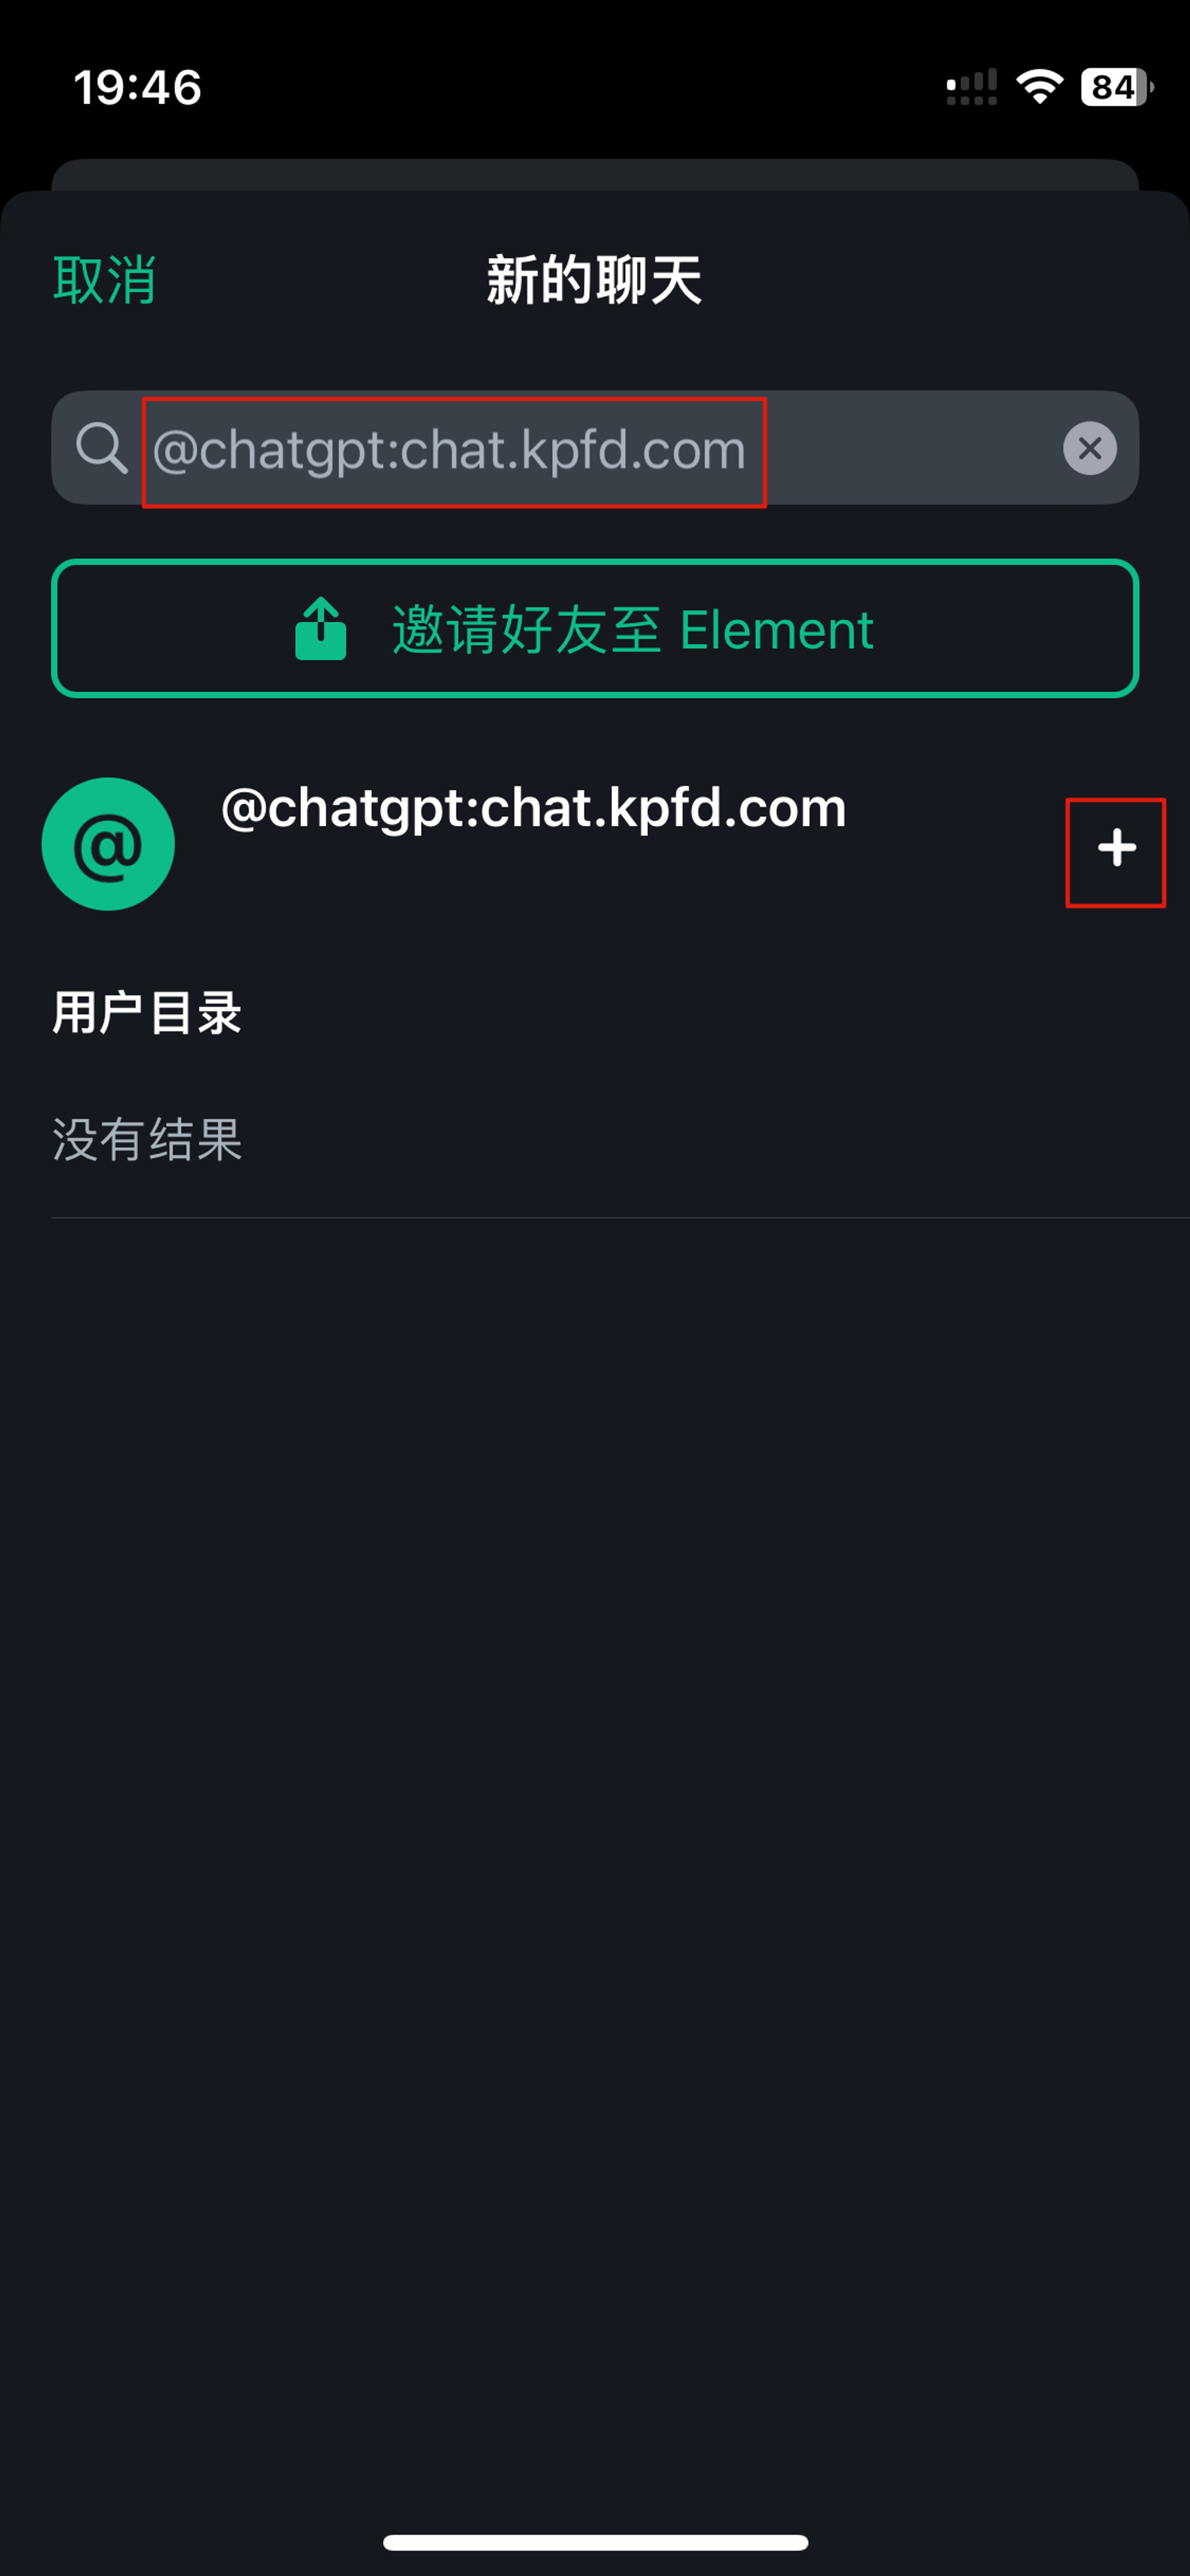 输入 @chatgpt:chat.kpfd.com 并添加好友